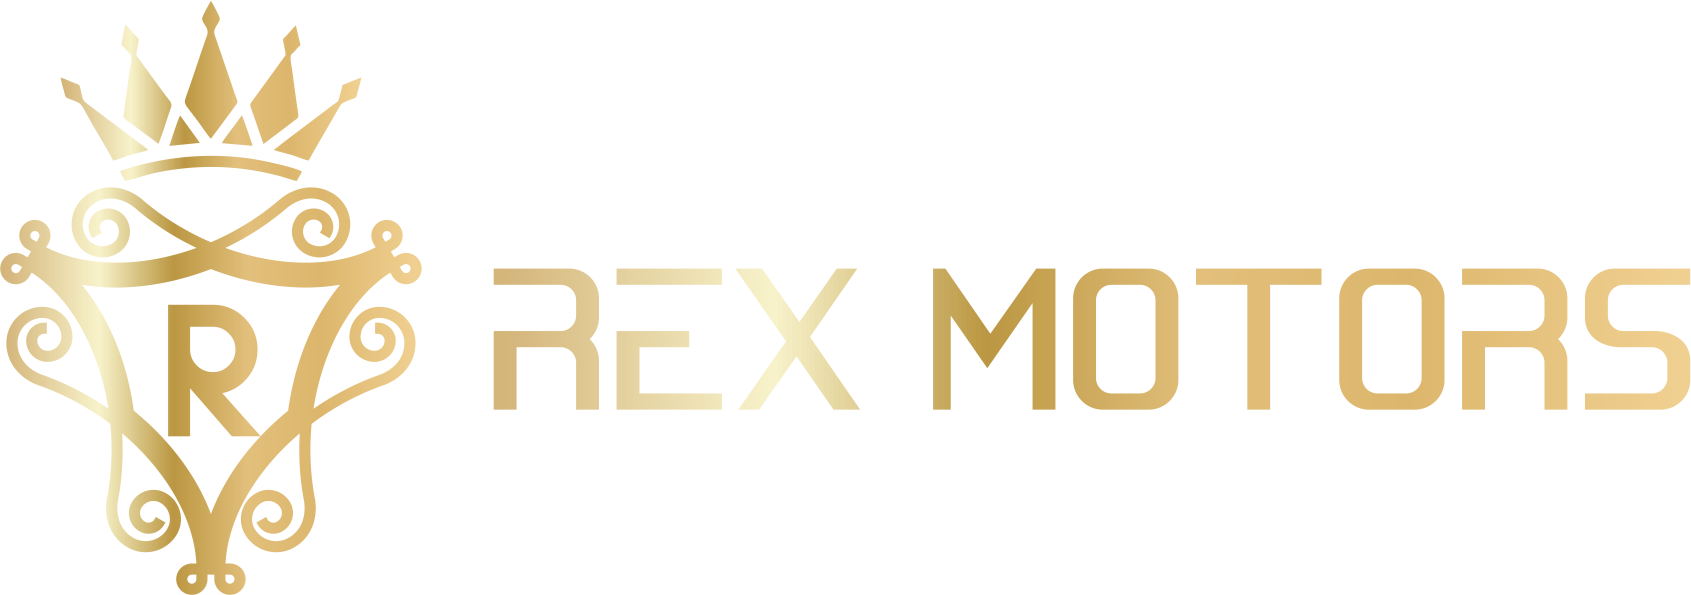 Rex Motors